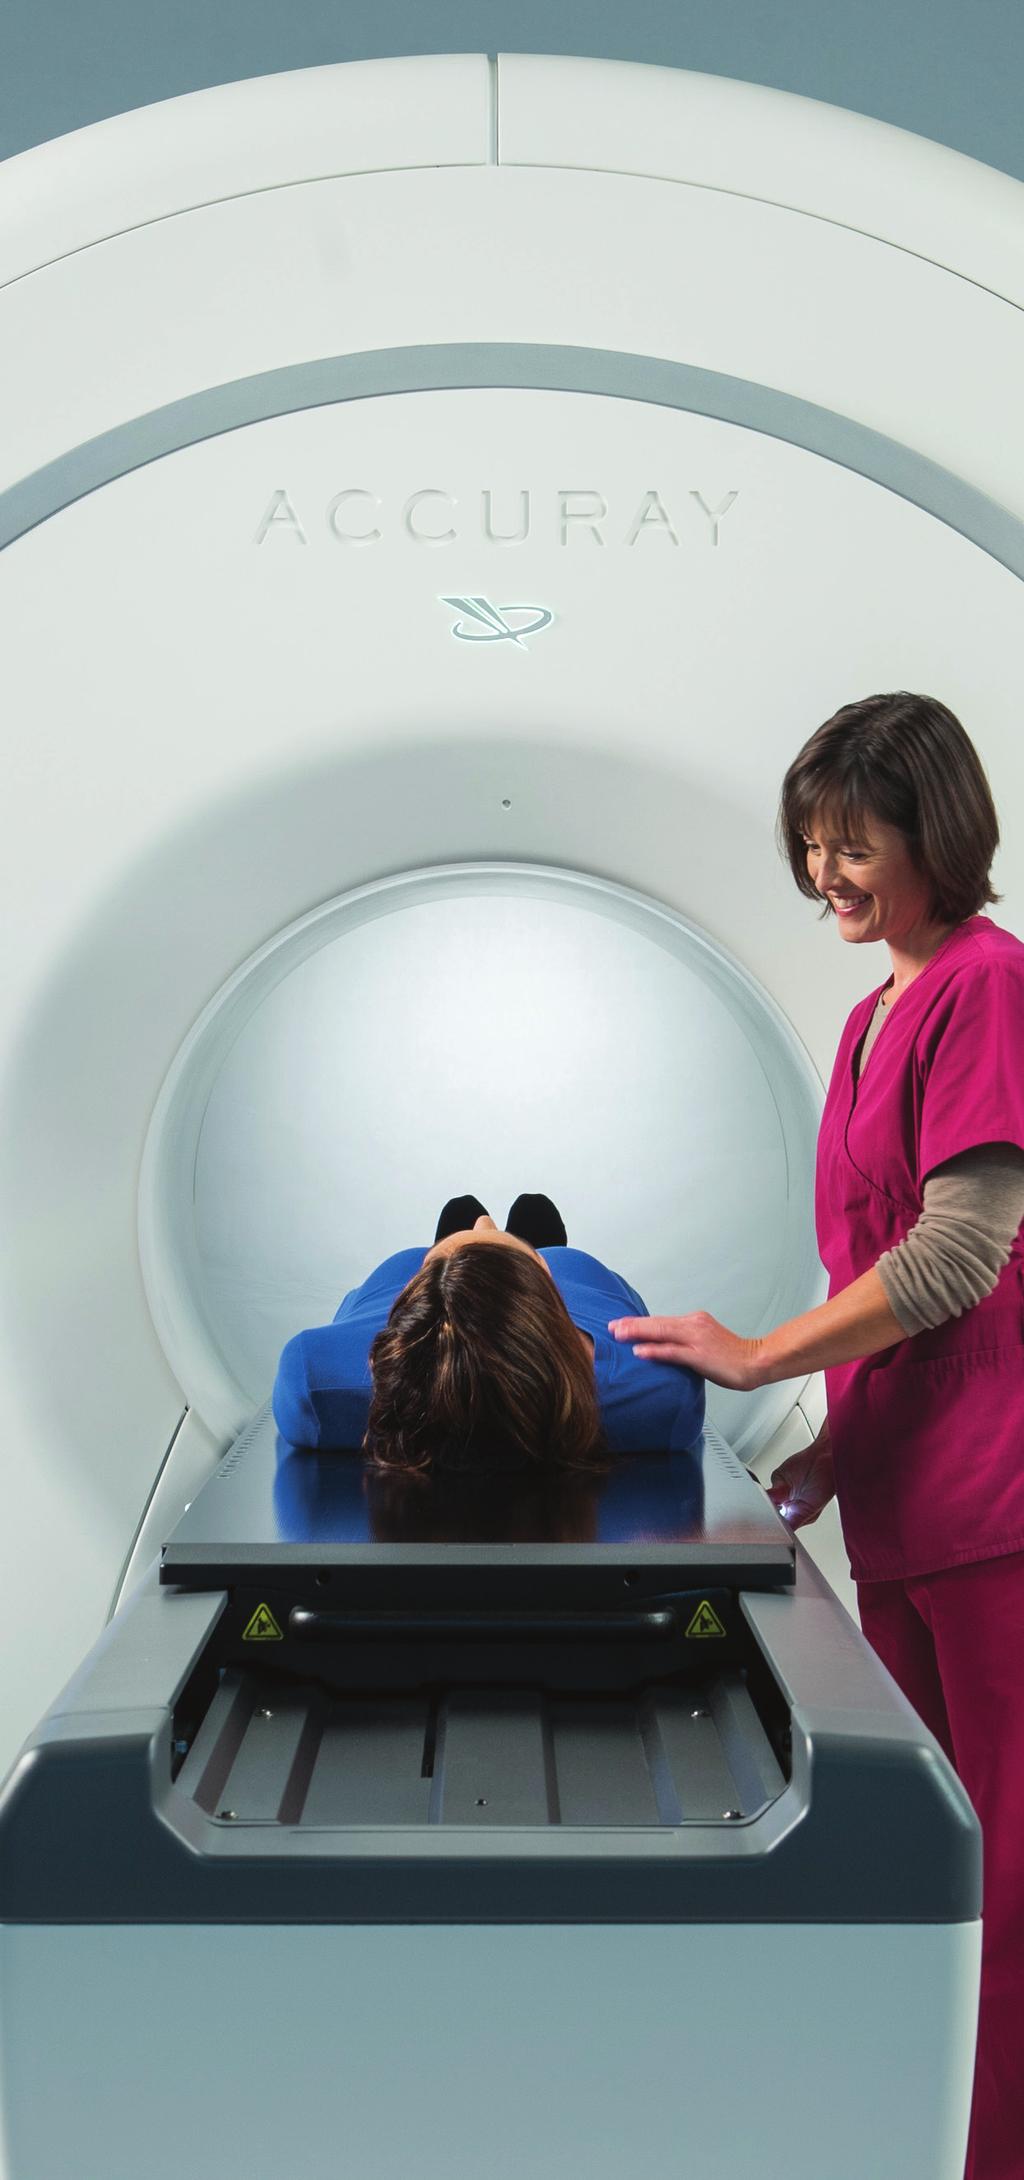 La guía de imágenes CTrue proporciona la localización diaria en 3D de objetivos utilizando tomografía computarizada y permite la reducción de los márgenes protegiendo al tejido sano.